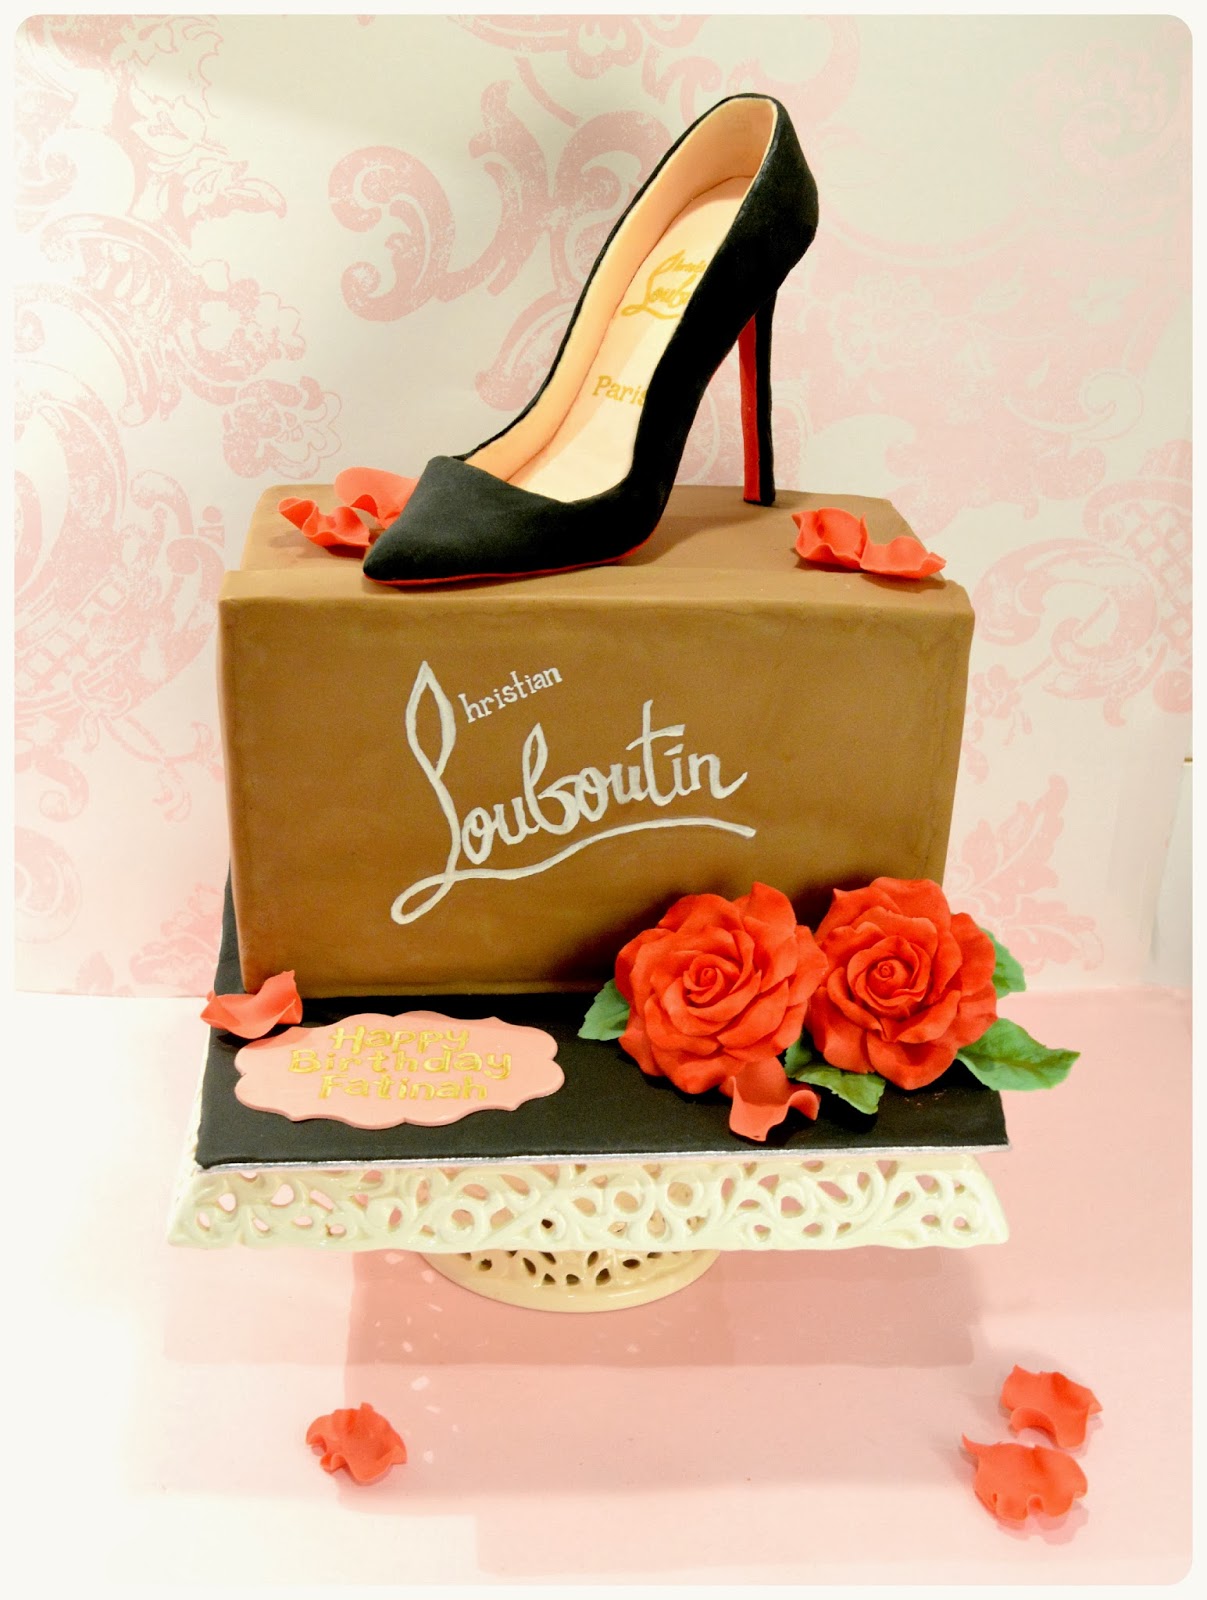 Louboutin Shoe Box 